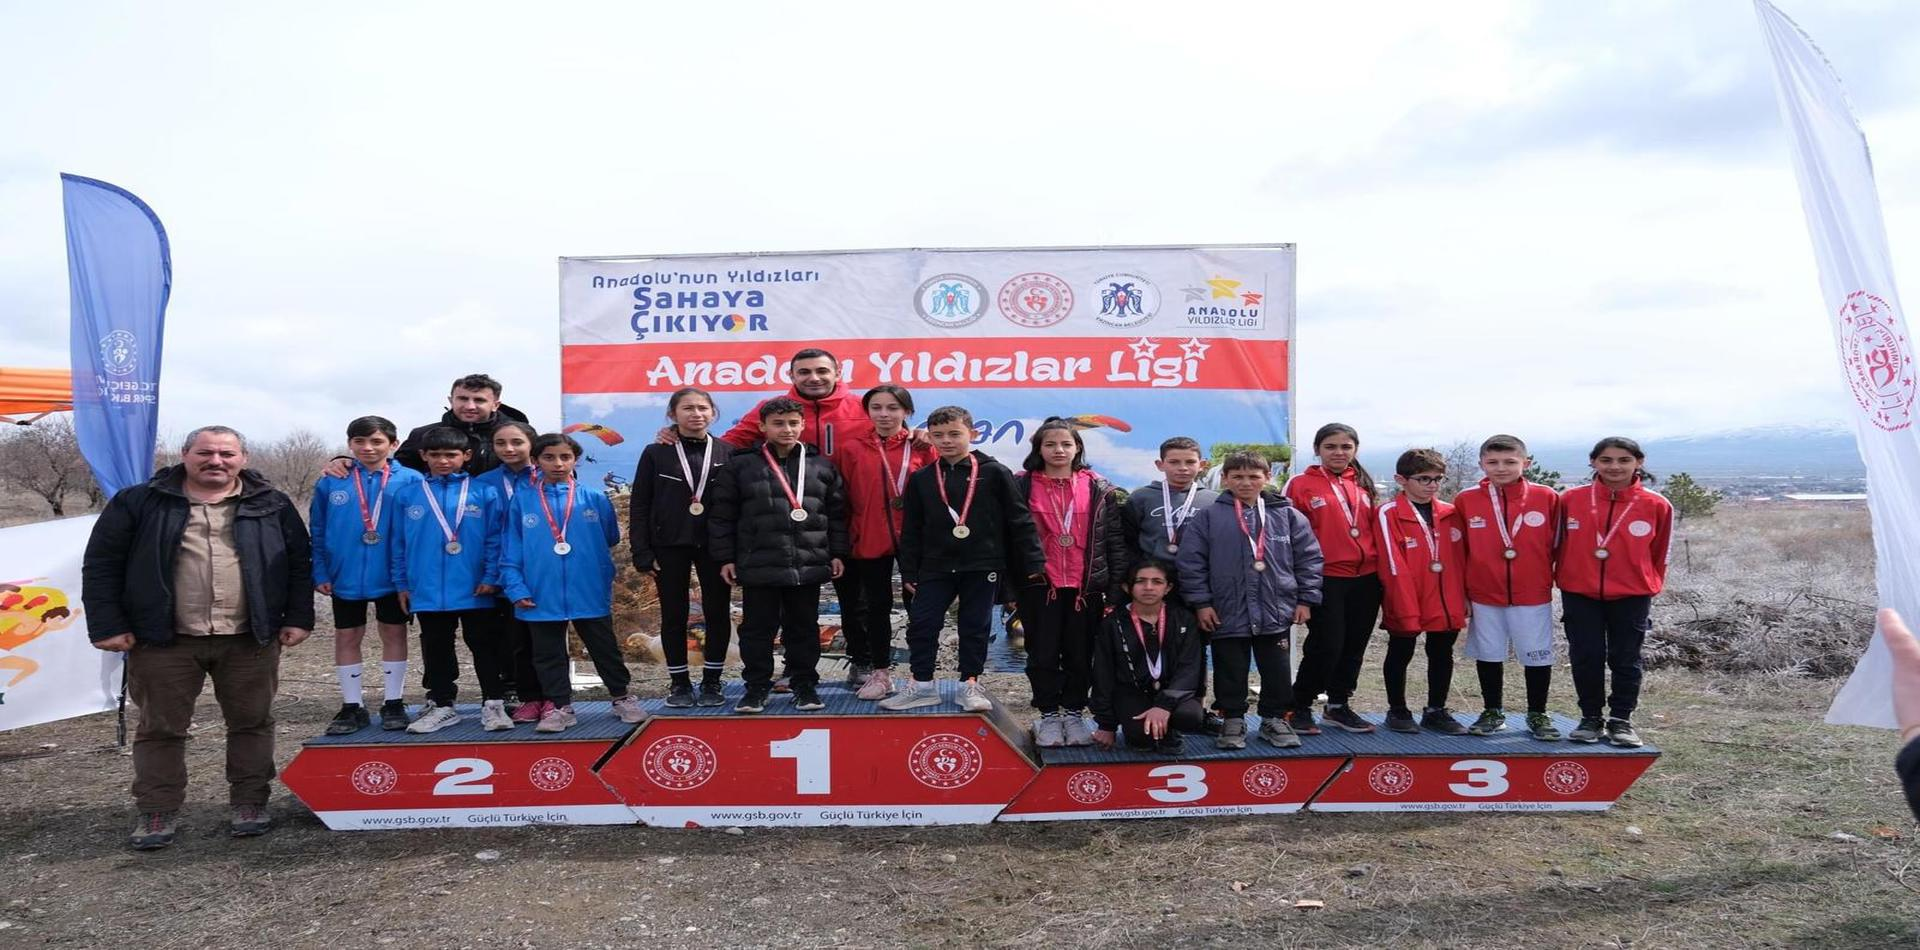 Atletizmi Geliştirme Projesi'nde ilk kademe yarışmaları Erzincan’da gerçekleştirildi.